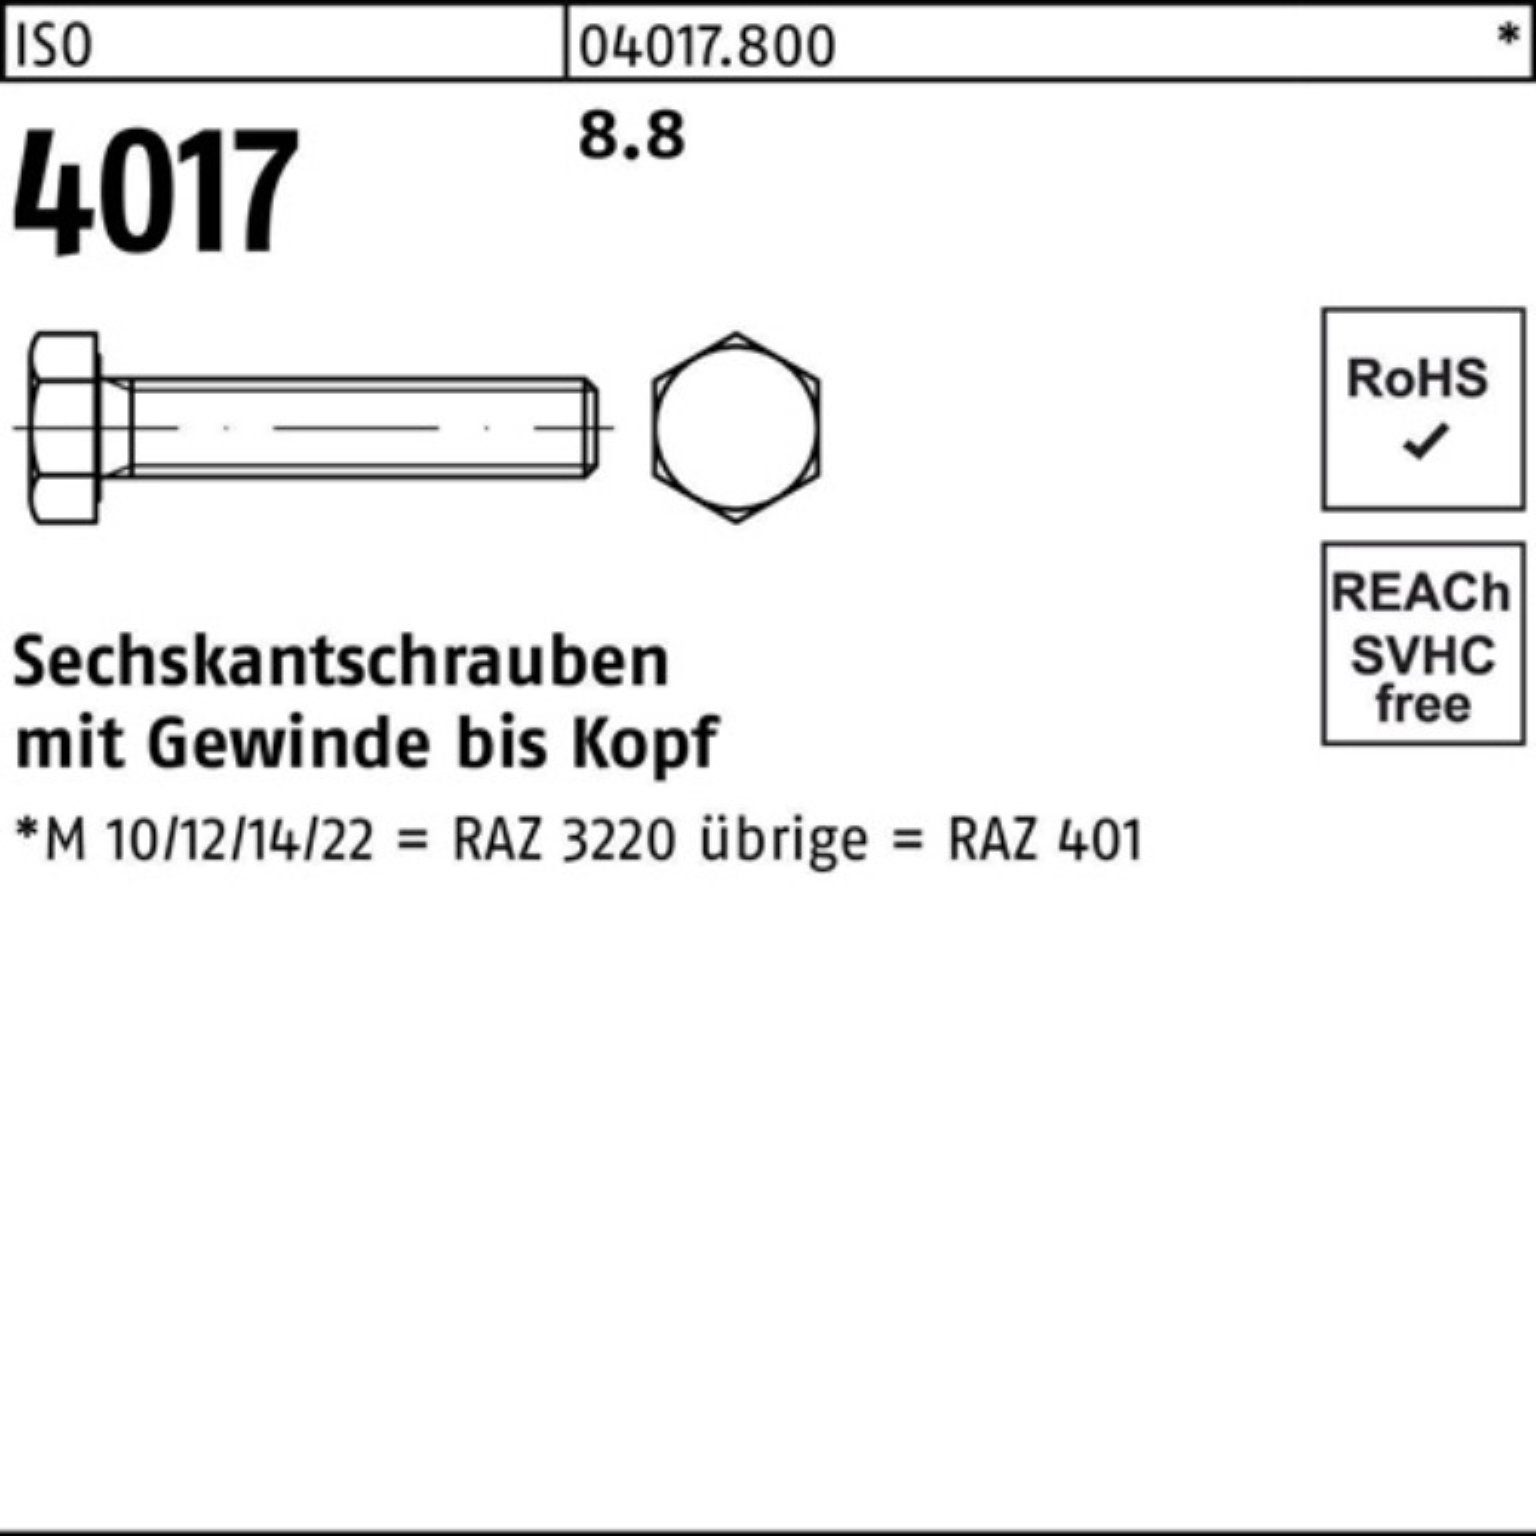 Bufab Sechskantschraube 4017 1 8.8 100er ISO VG M24x 401 Pack 250 ISO Stück Sechskantschraube